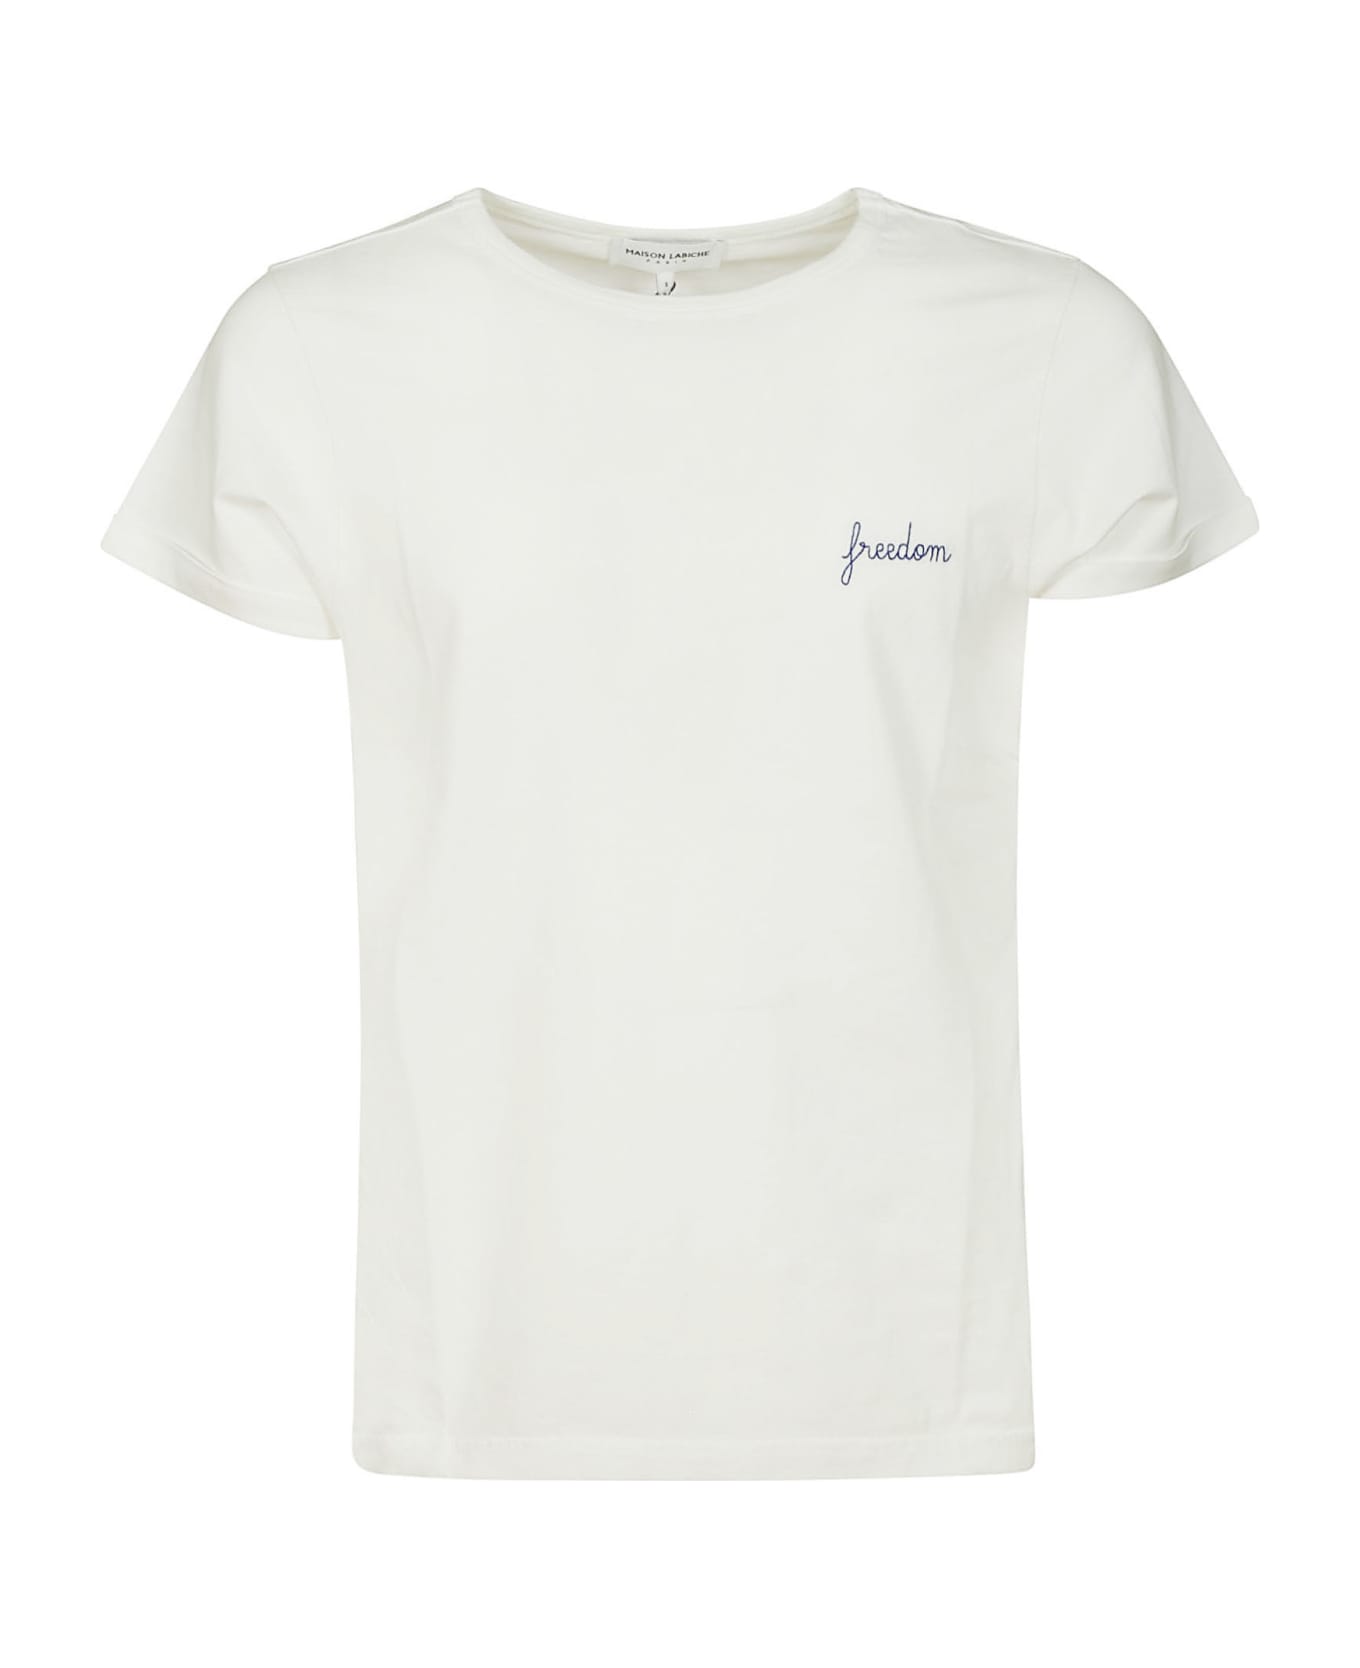 Maison Labiche Tee-shirt Poitou Freedom/gots - White